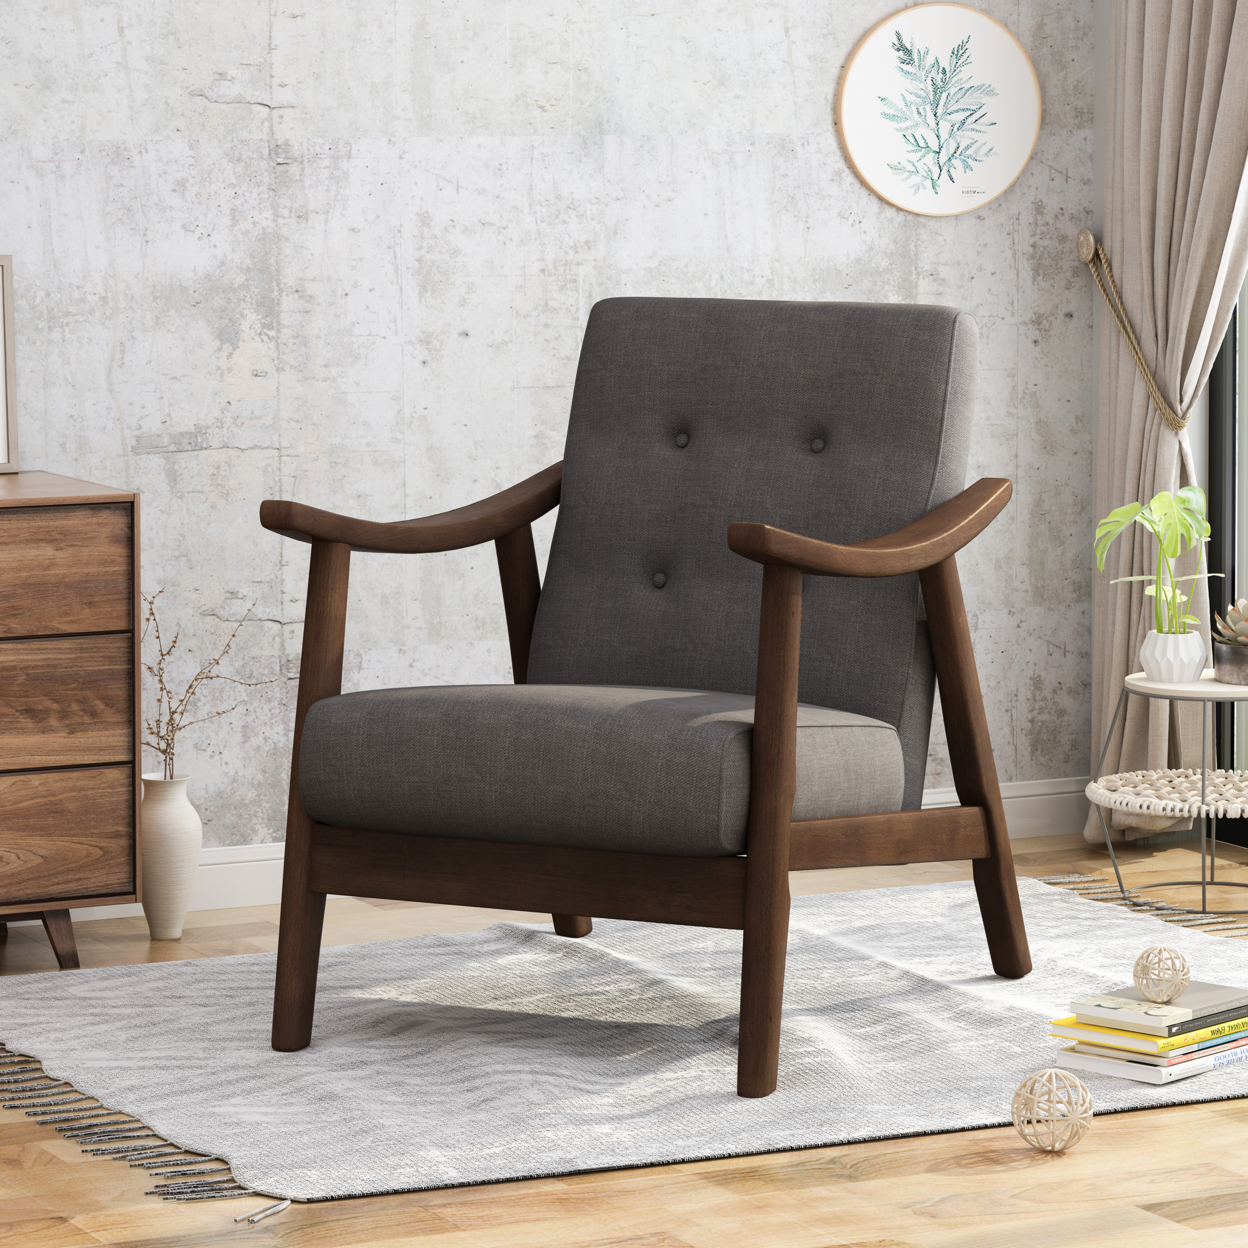 Aurora Mid-Century Modern Accent Chair - Beige + Brown